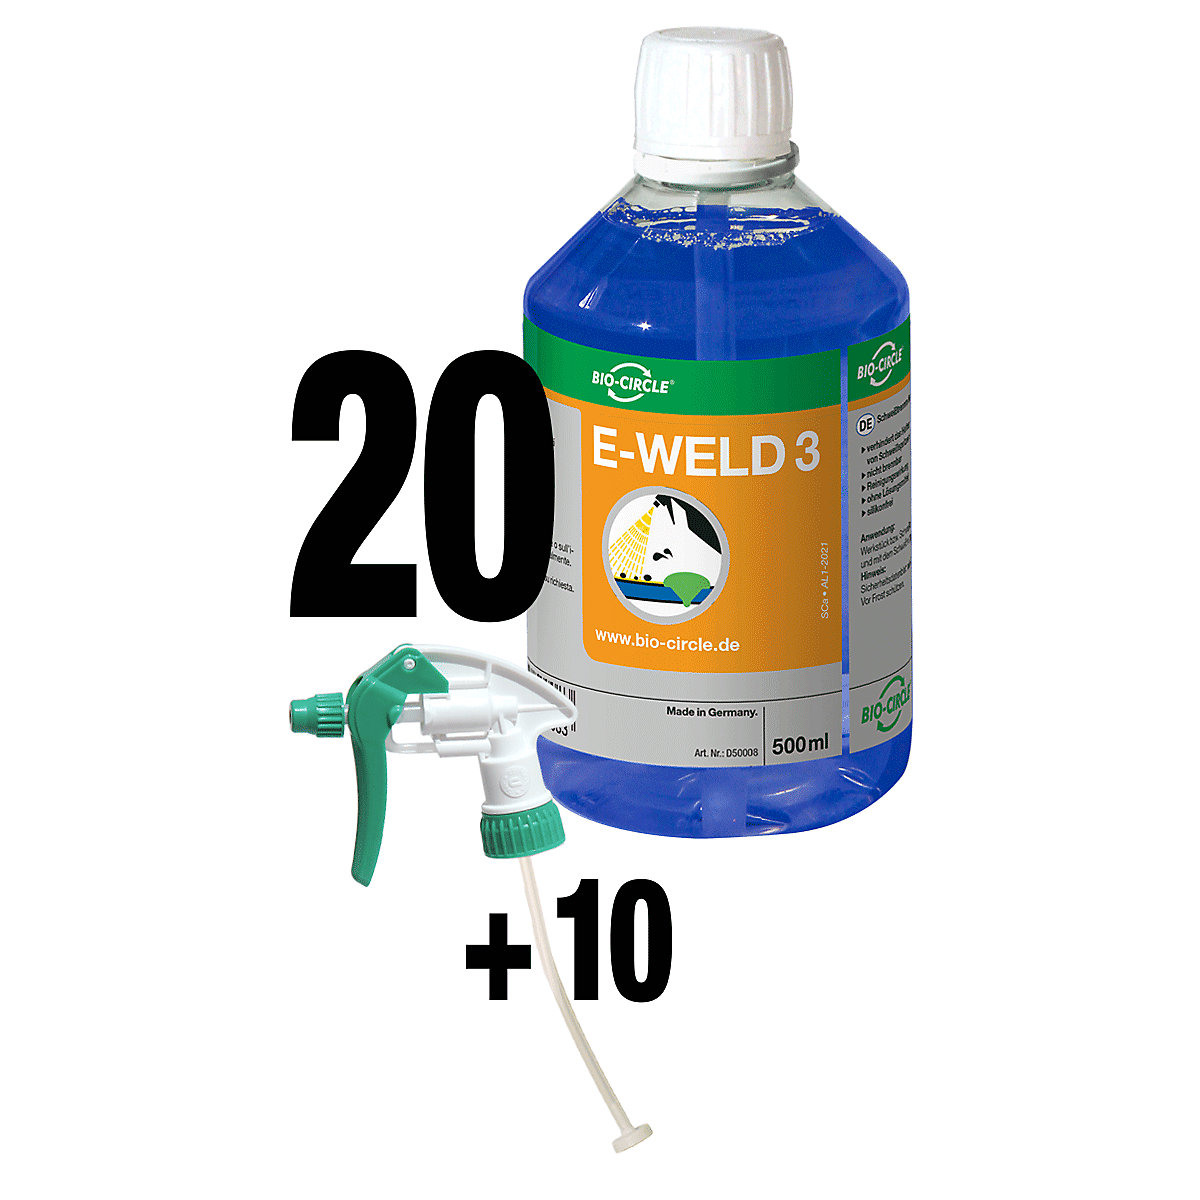 E-WELD 3 hegesztésvédő spray - Bio-Circle